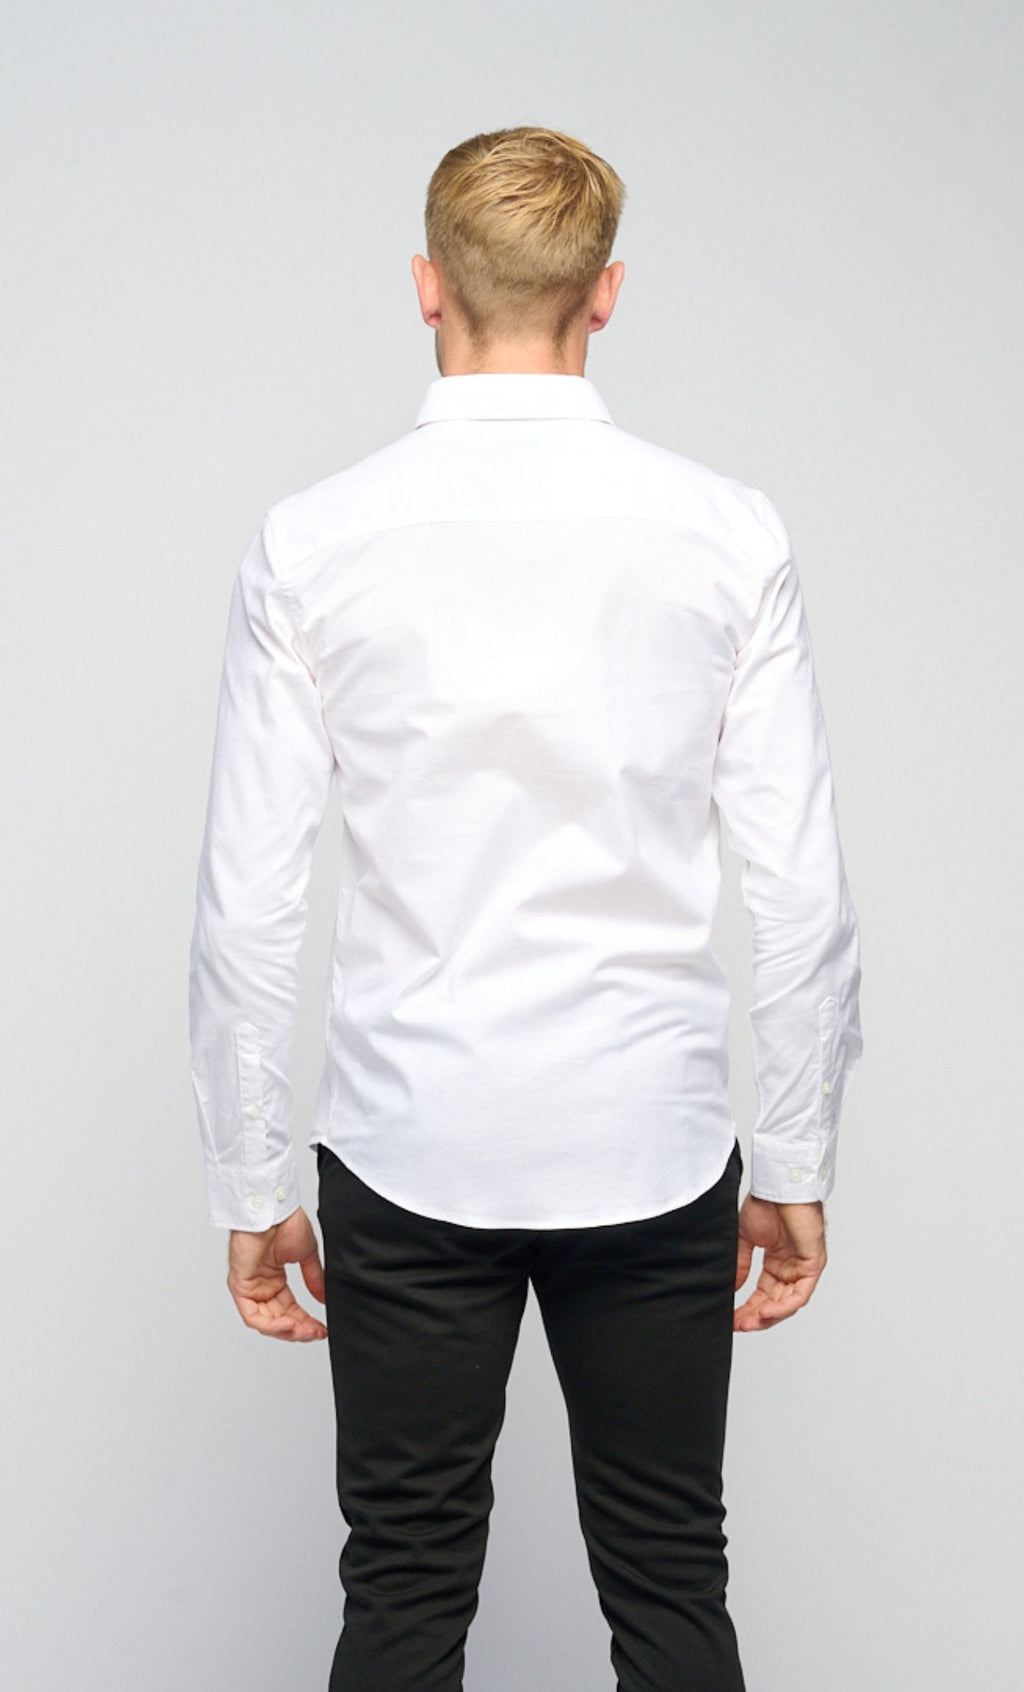 原始性能牛津衬衫™ -WHITE